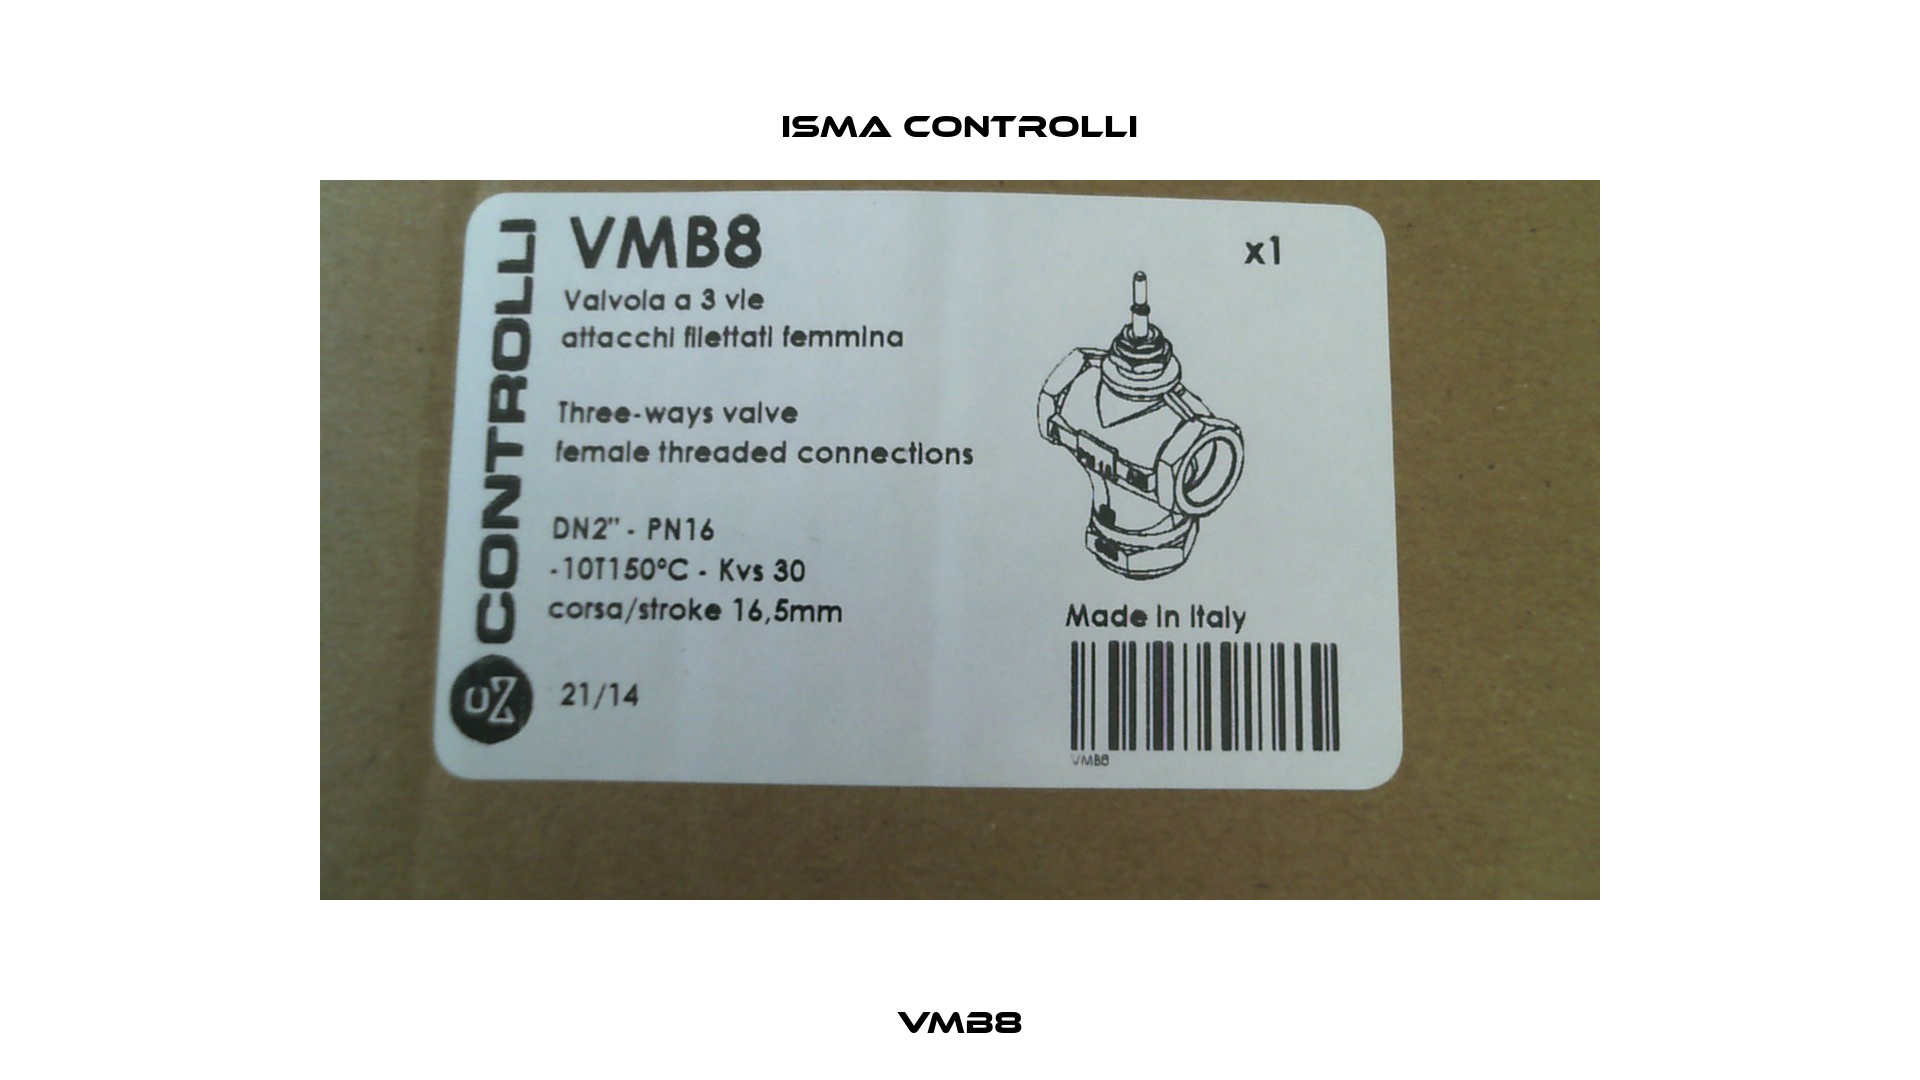 VMB8 iSMA CONTROLLI